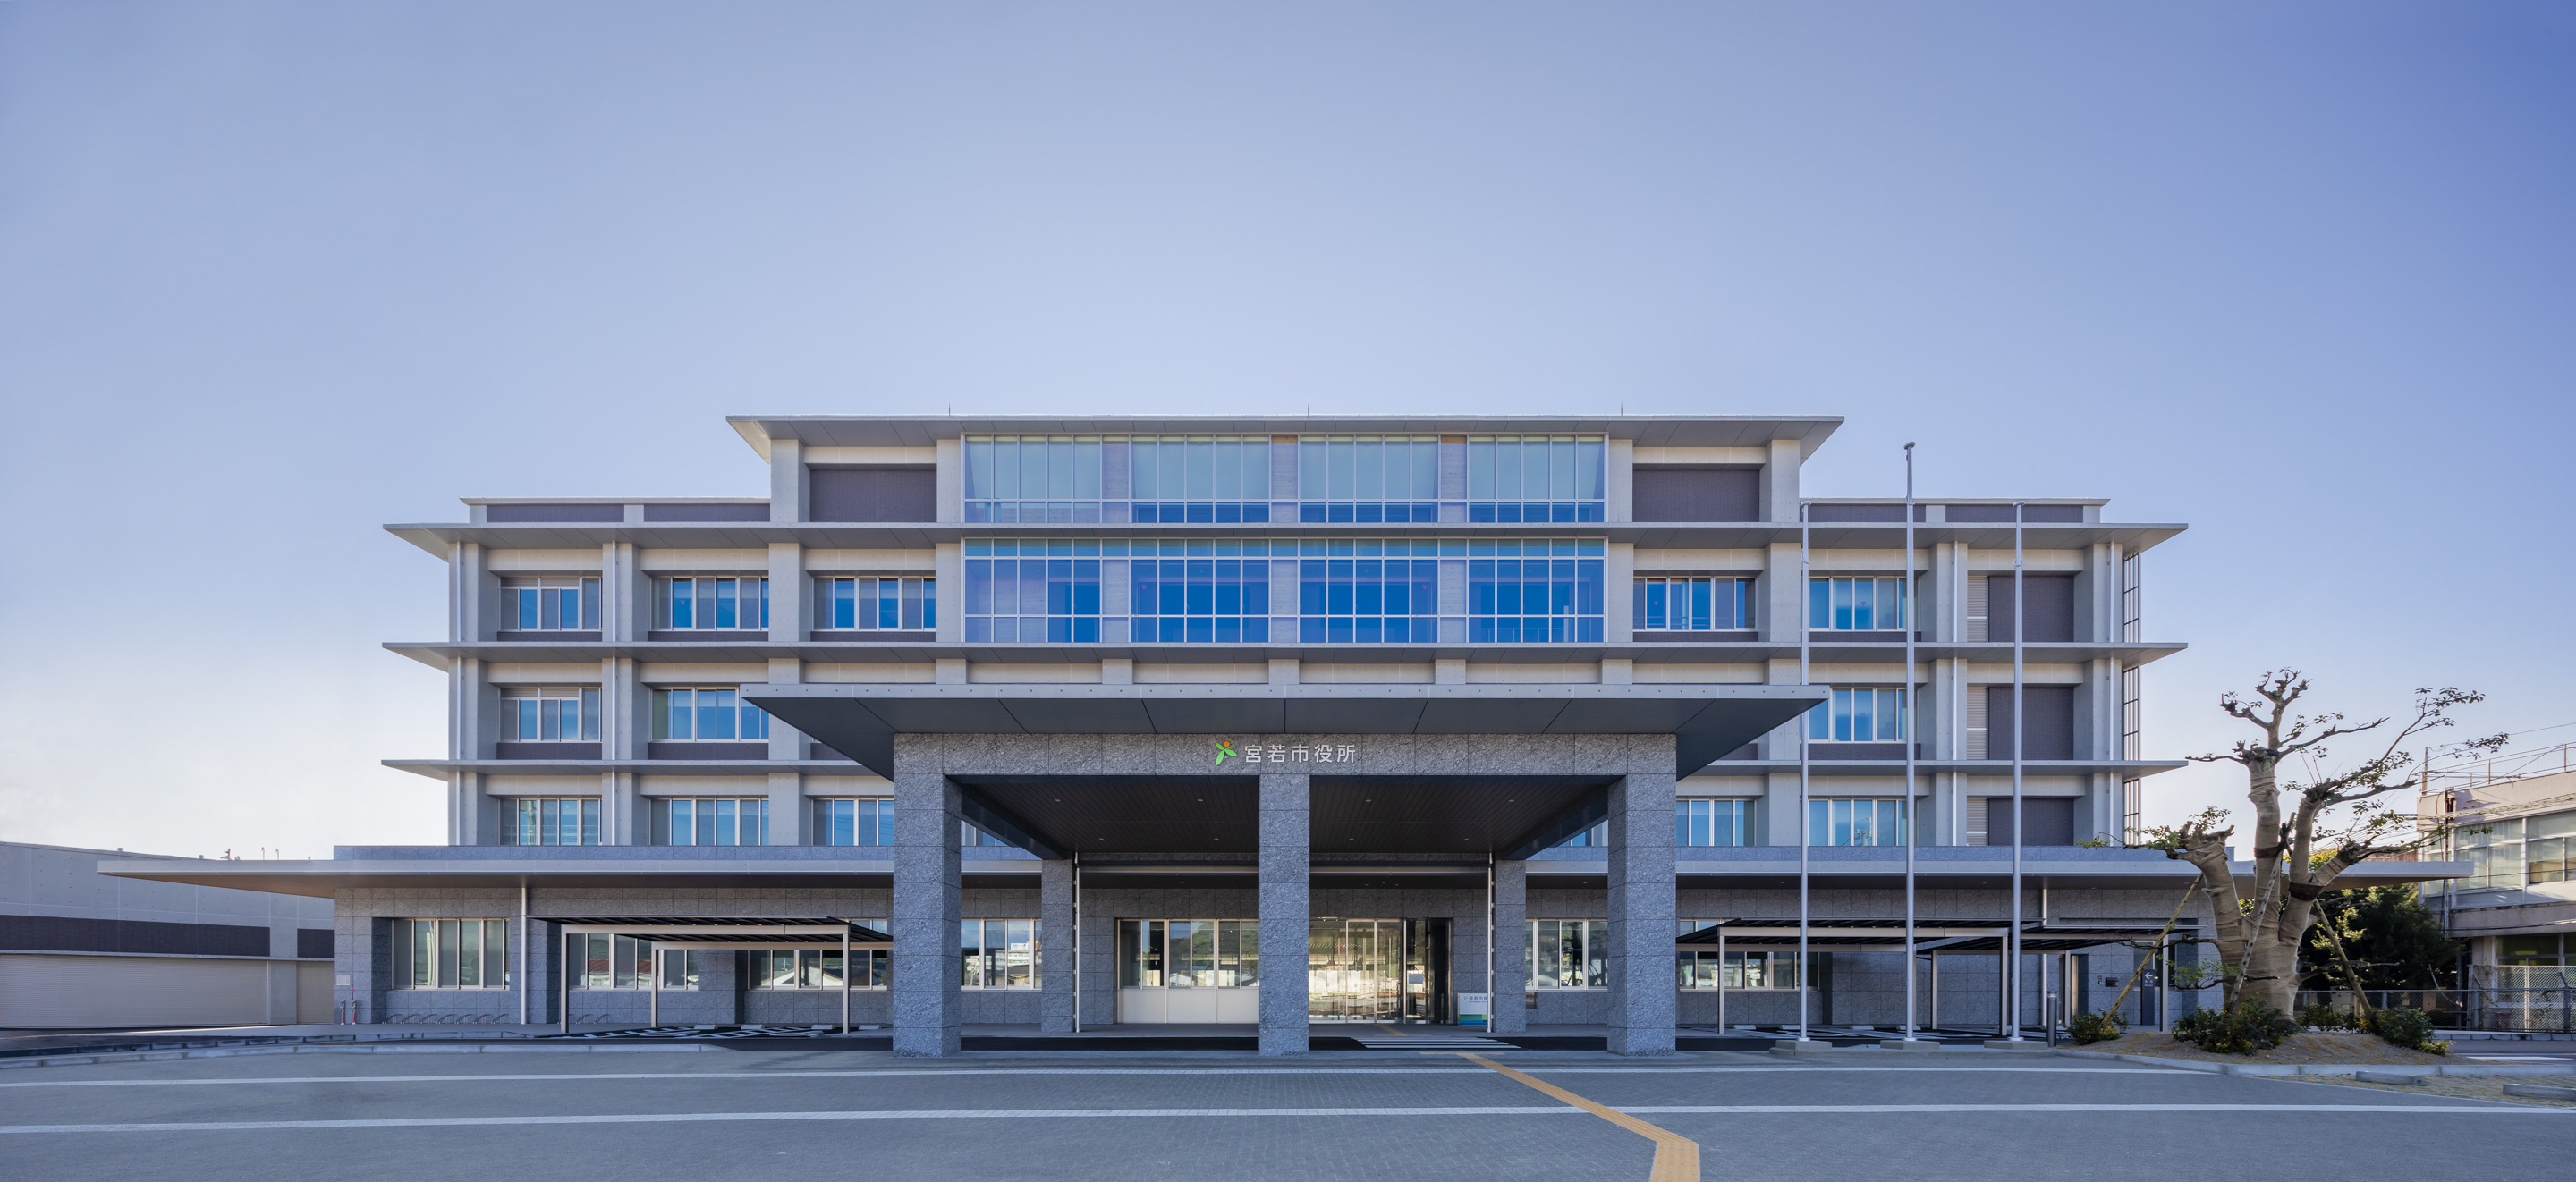 宮若市新庁舎(福岡県)の写真